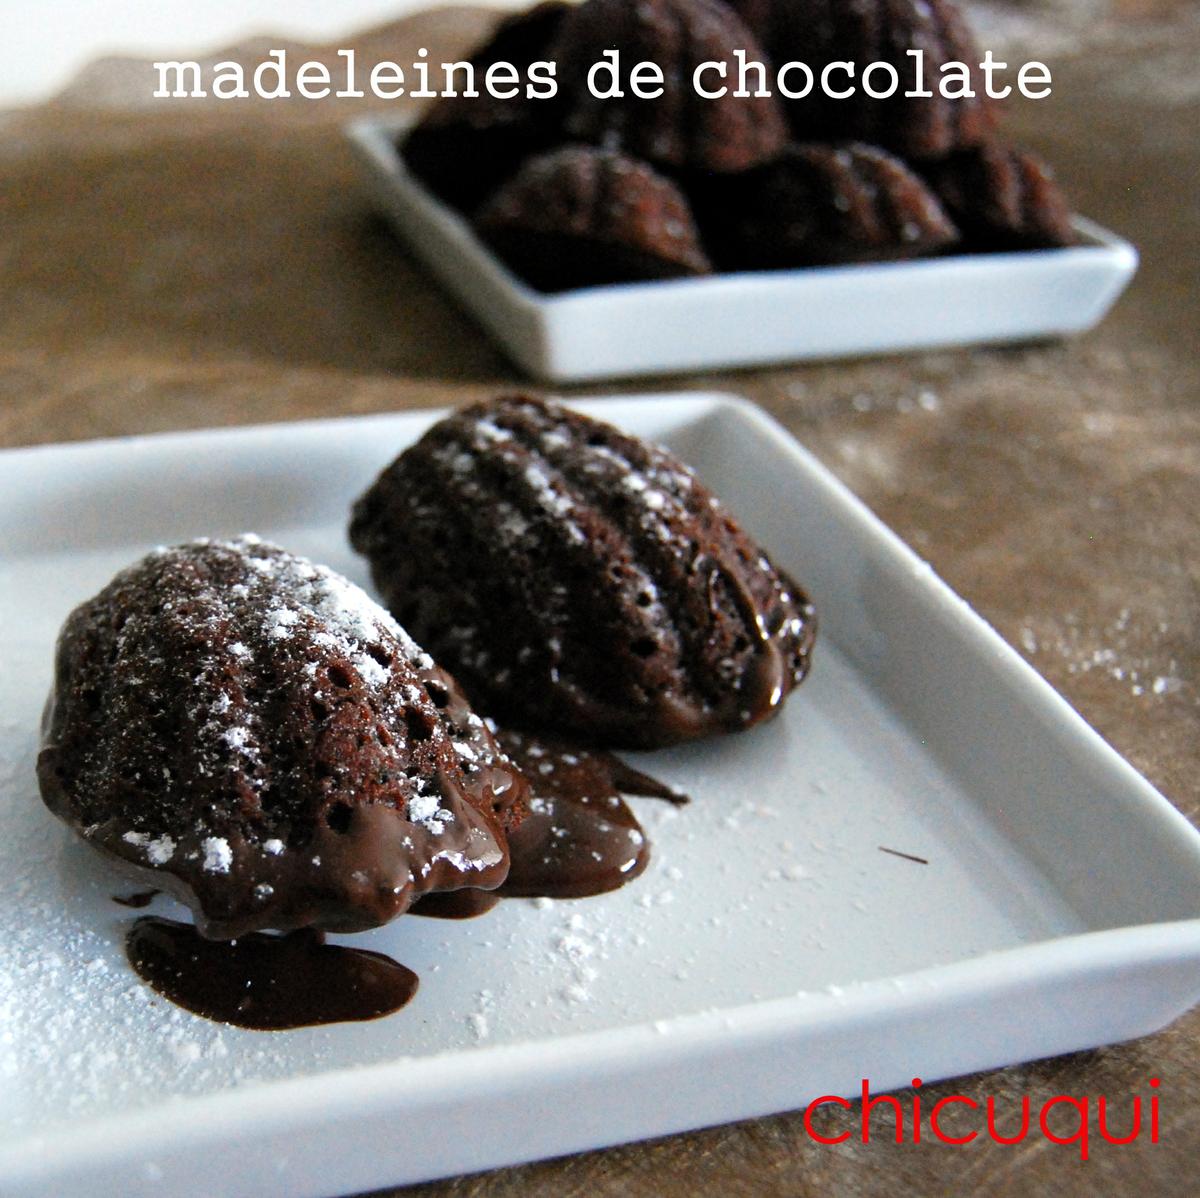 receta de madeleines de chocolate en chicuqui.com galletas decoradas